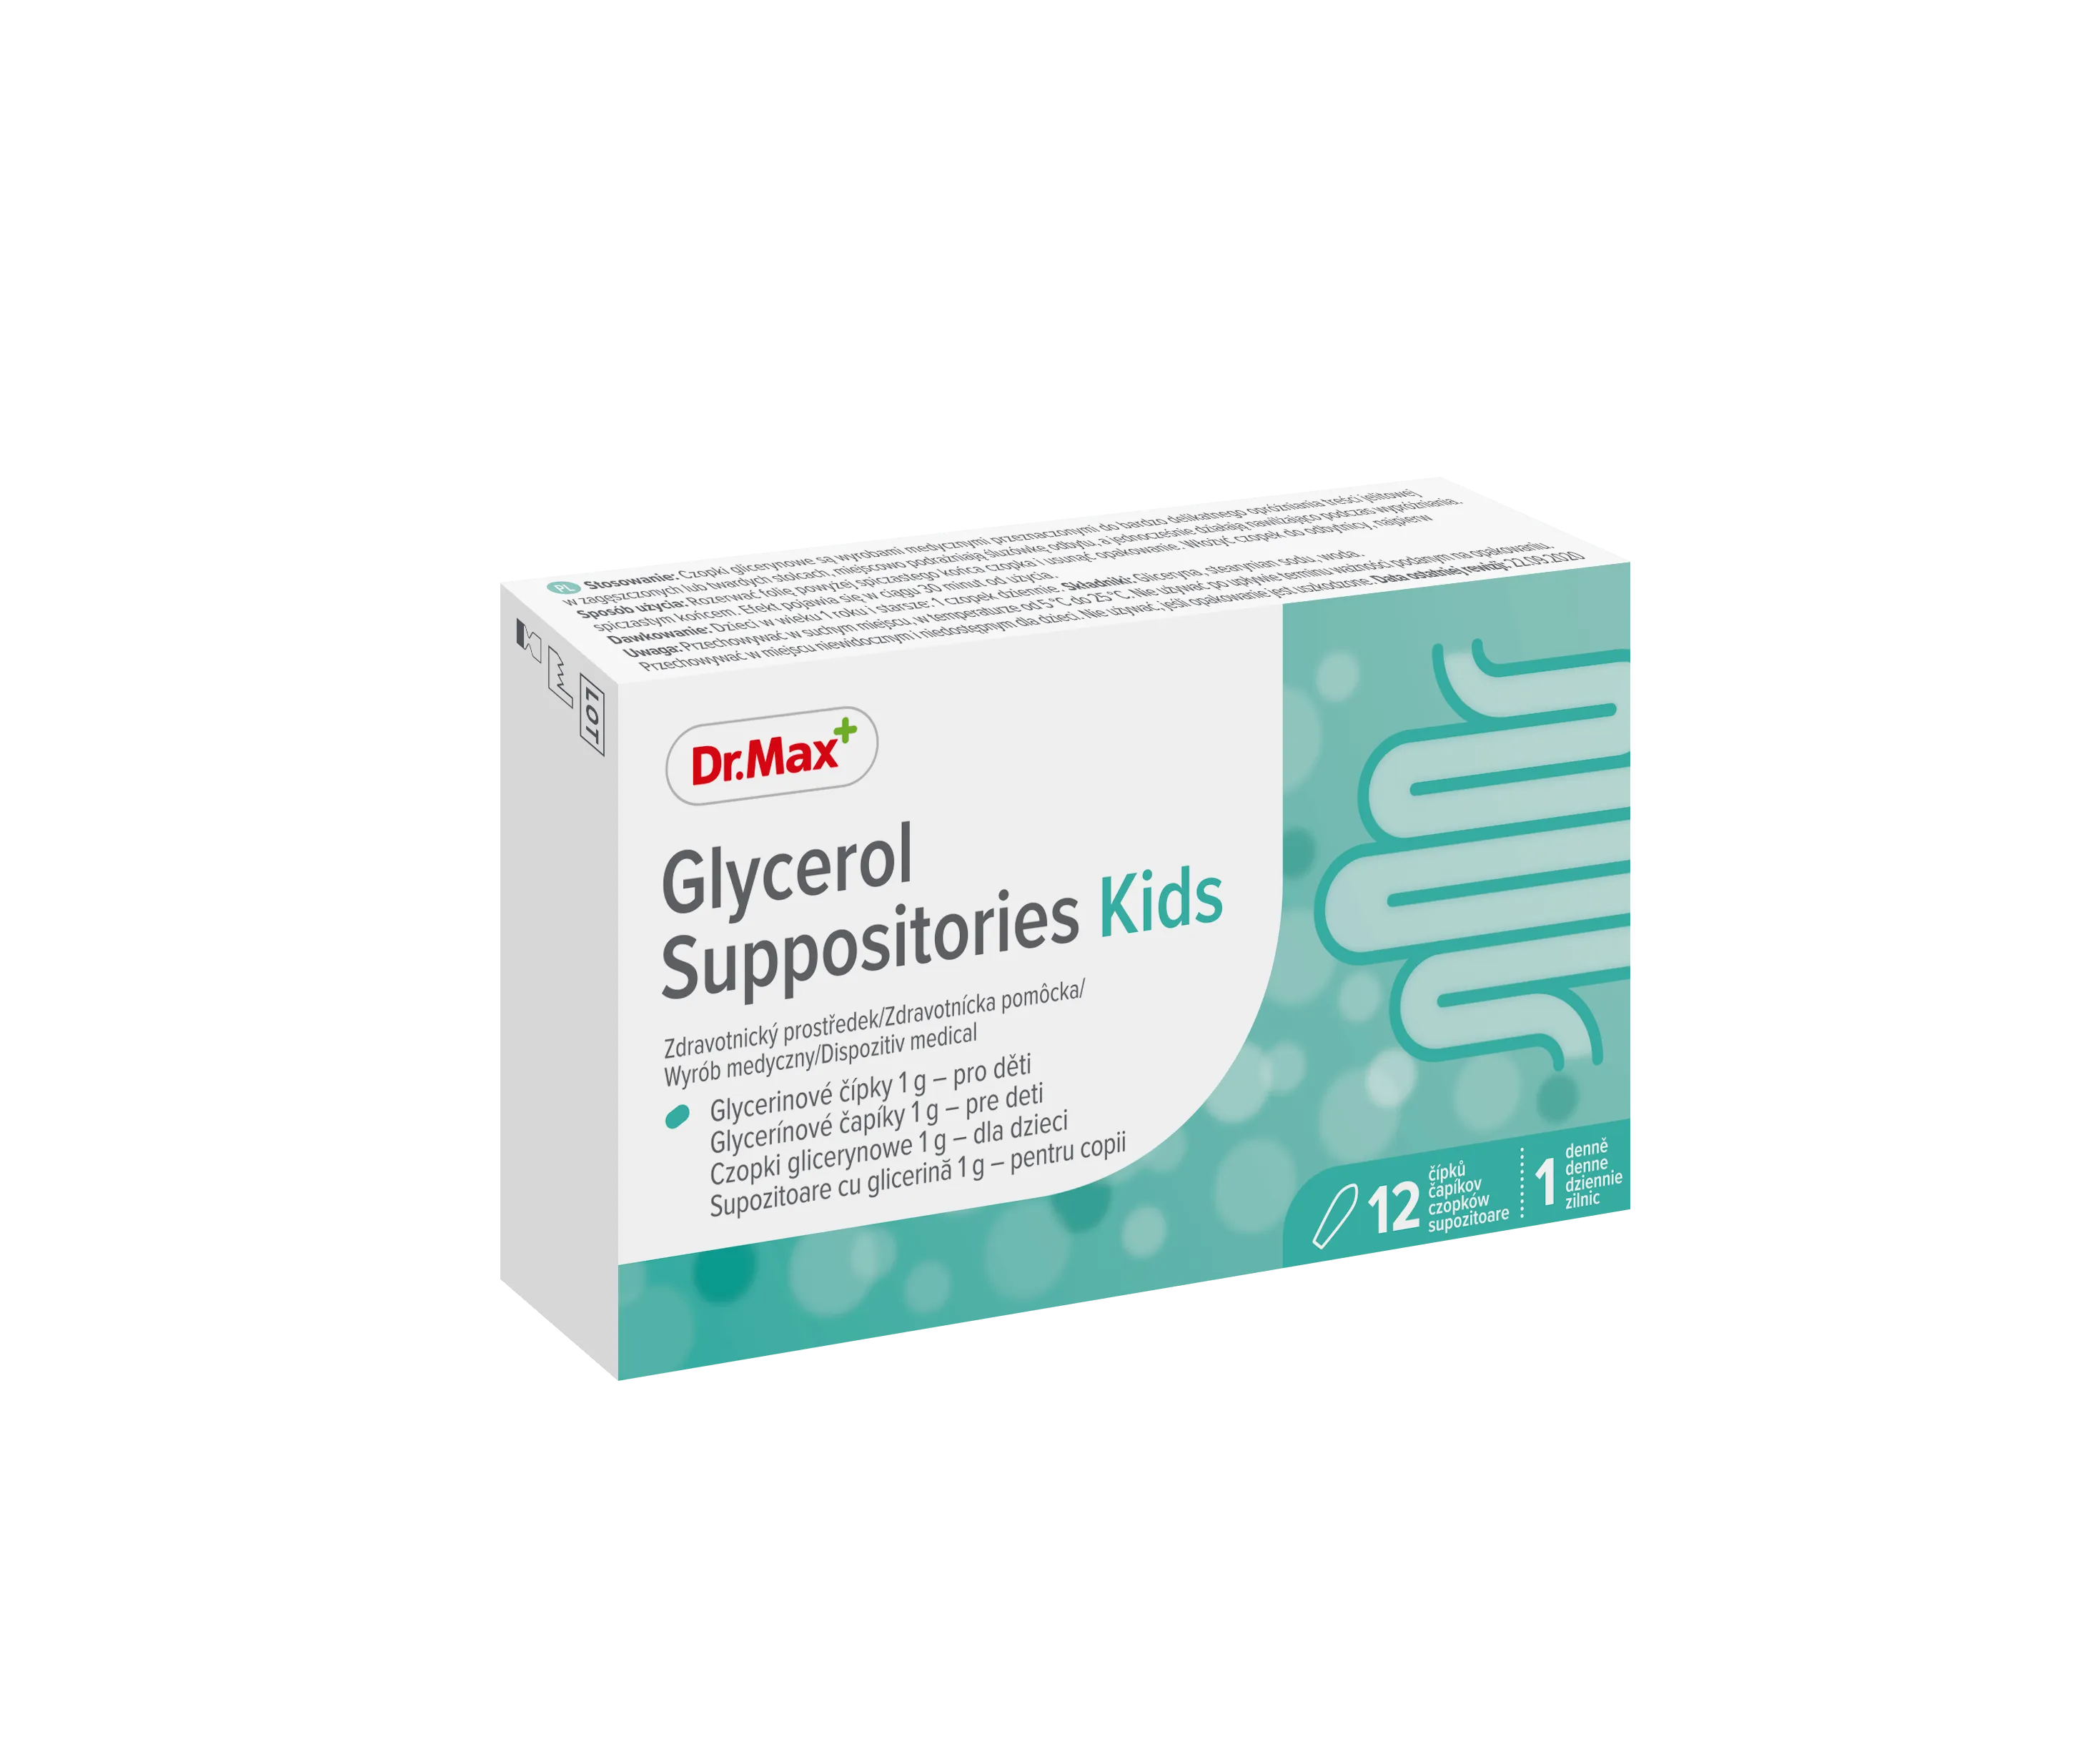 Glycerol Suppositories Kids Dr.Max, czopki glicerynowe 1 g, 12 czopków